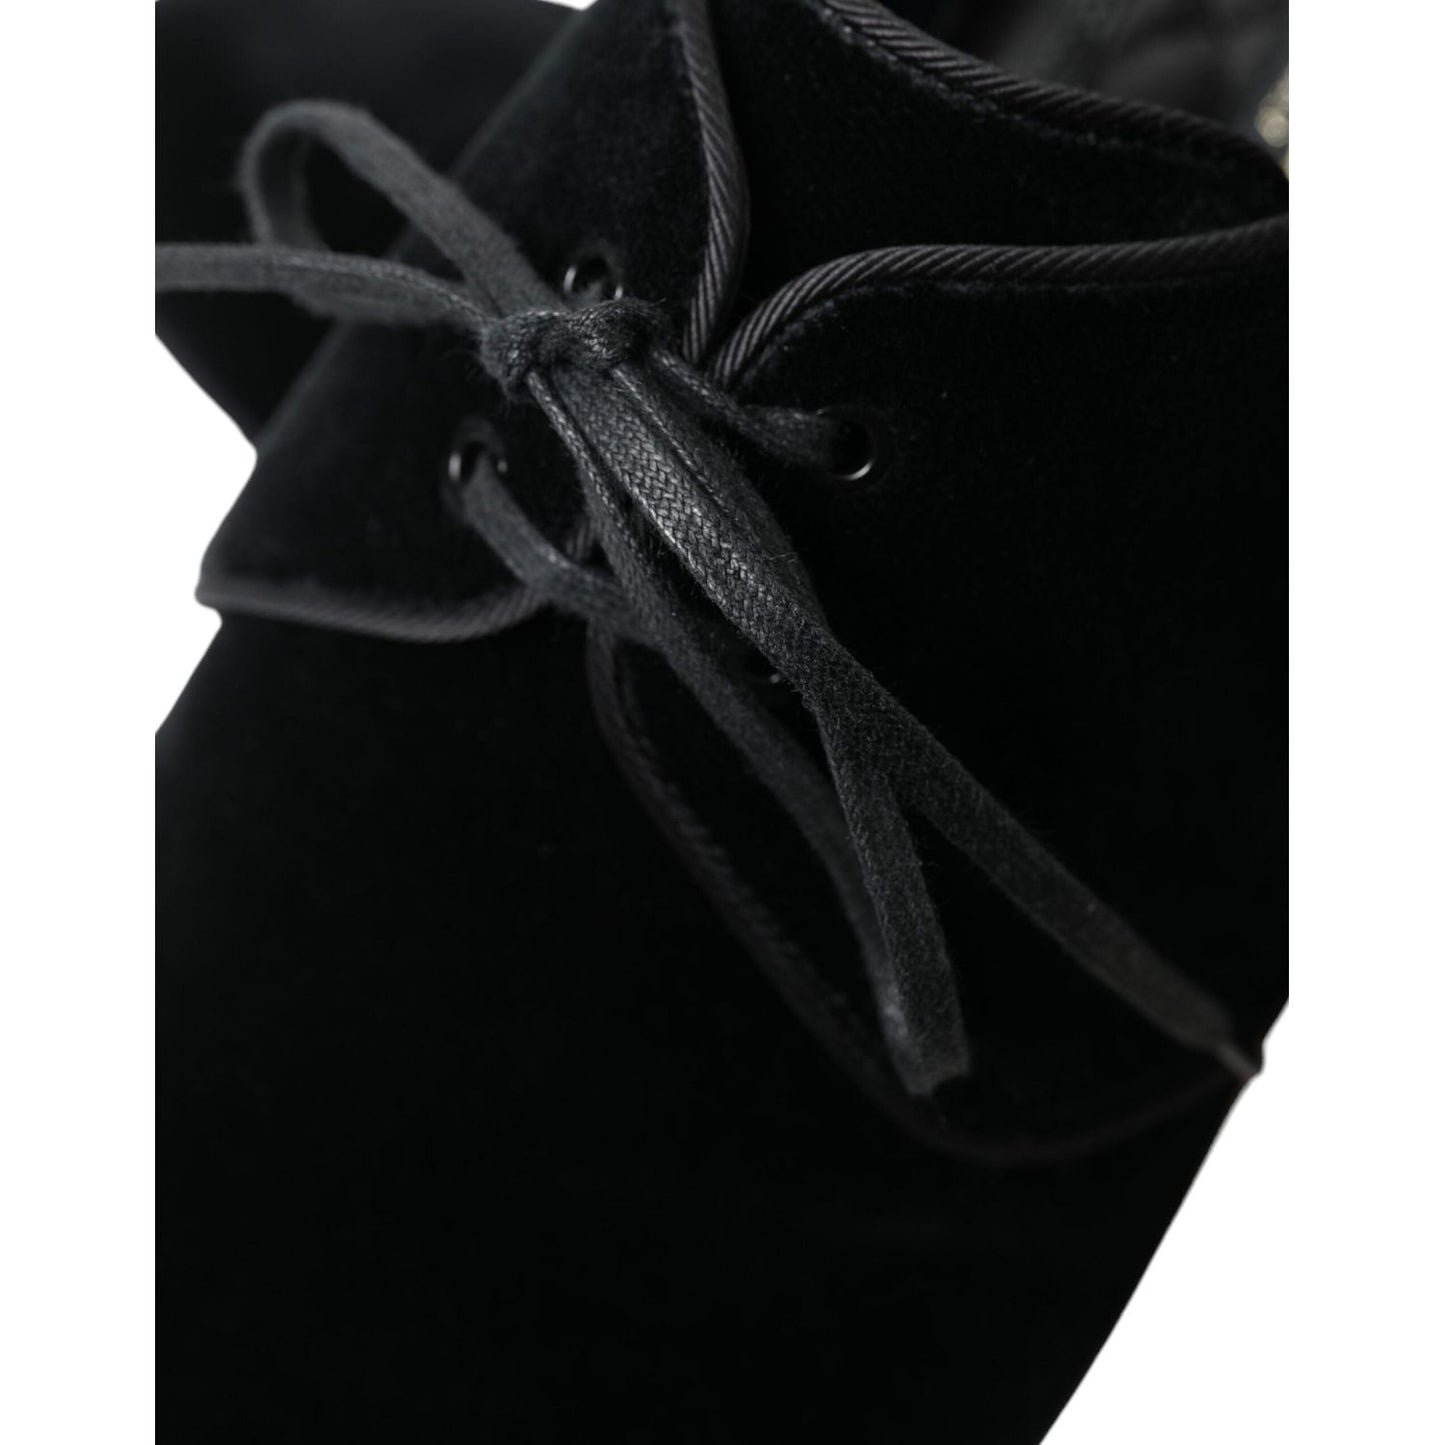 Dolce & Gabbana Elegant Black Velvet Derby Dress Shoes black-velvet-lace-up-formal-derby-dress-shoes 465A1268-bg-scaled-82185153-428.jpg